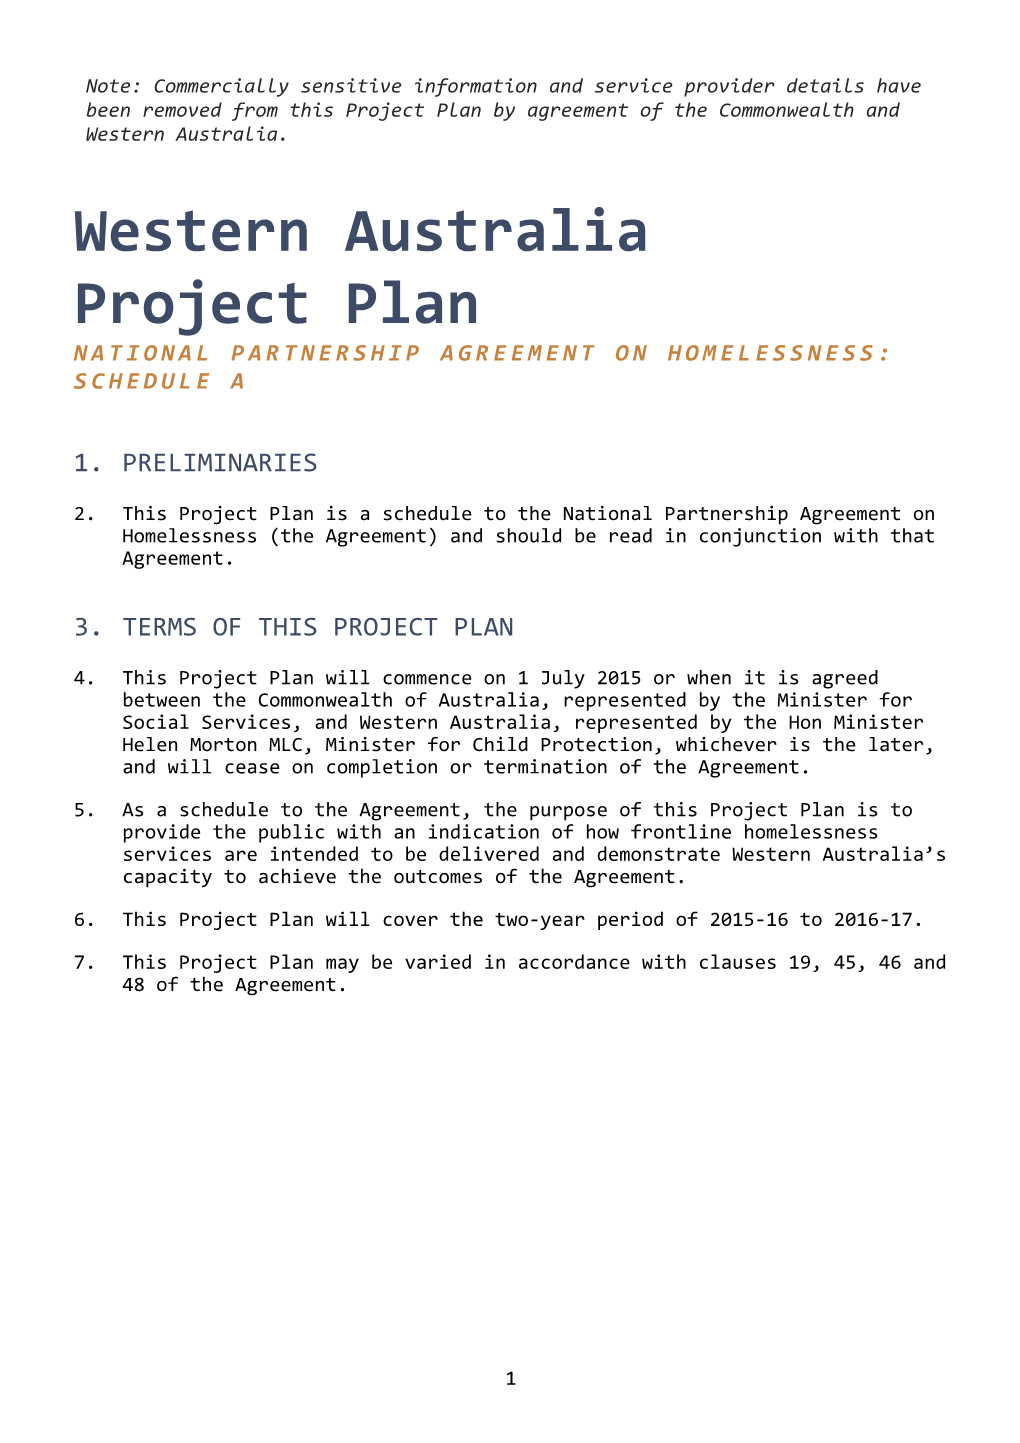 Western Australia Project Plan